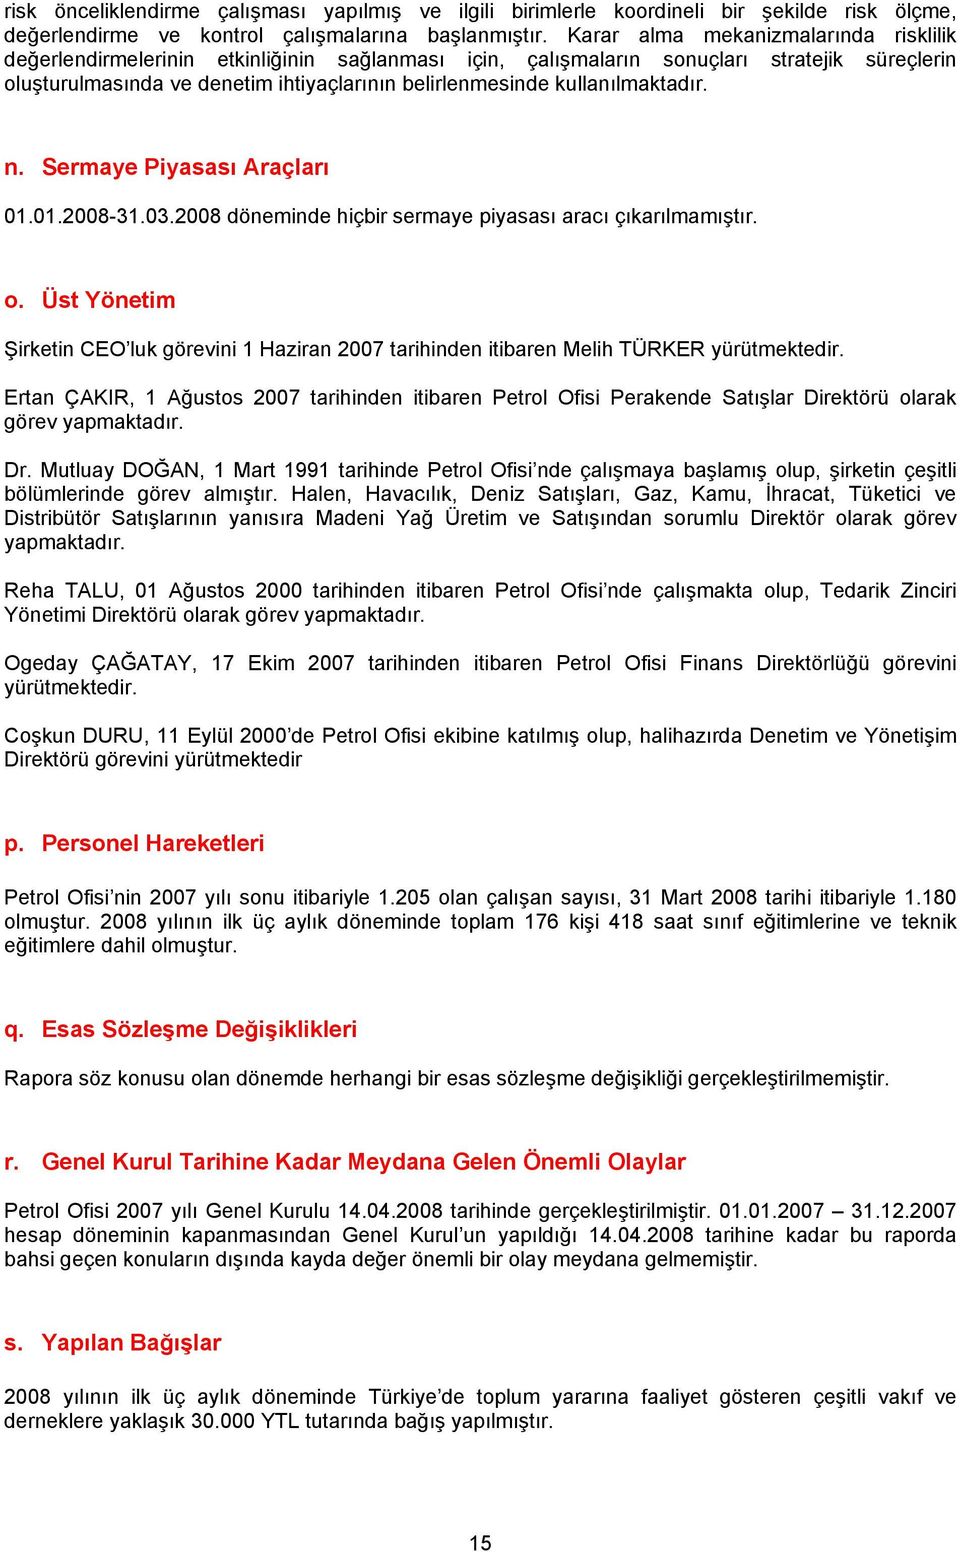 kullanılmaktadır. n. Sermaye Piyasası Araçları 01.01.2008-31.03.2008 döneminde hiçbir sermaye piyasası aracı çıkarılmamıştır. o.